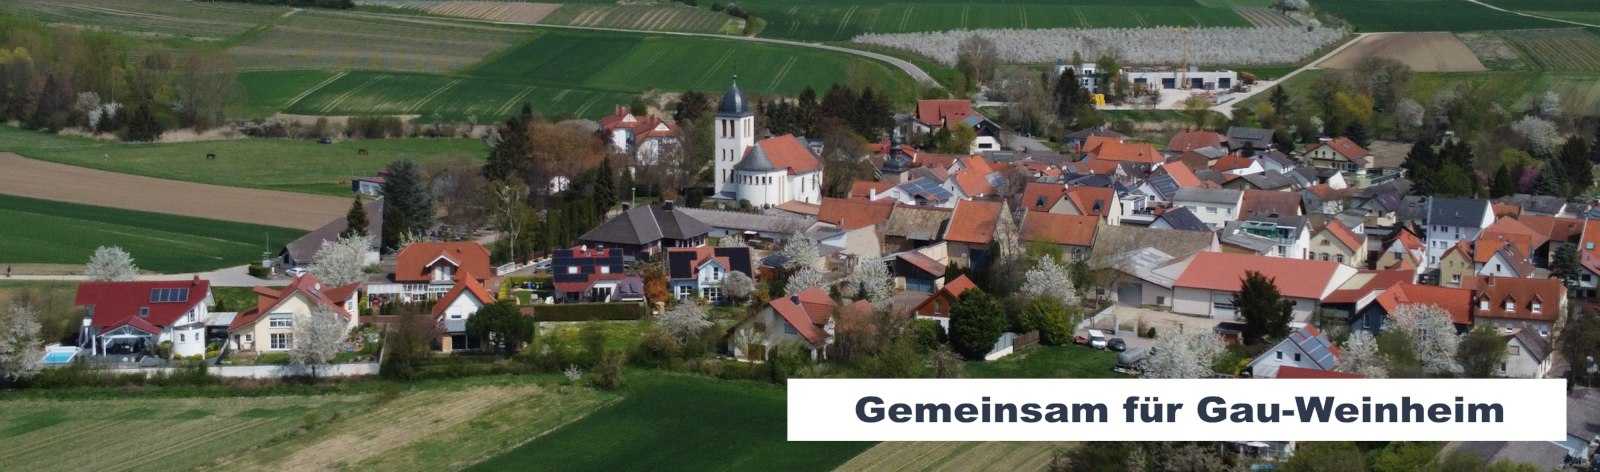 Wählergruppe Gemeinsam für Gau-Weinheim